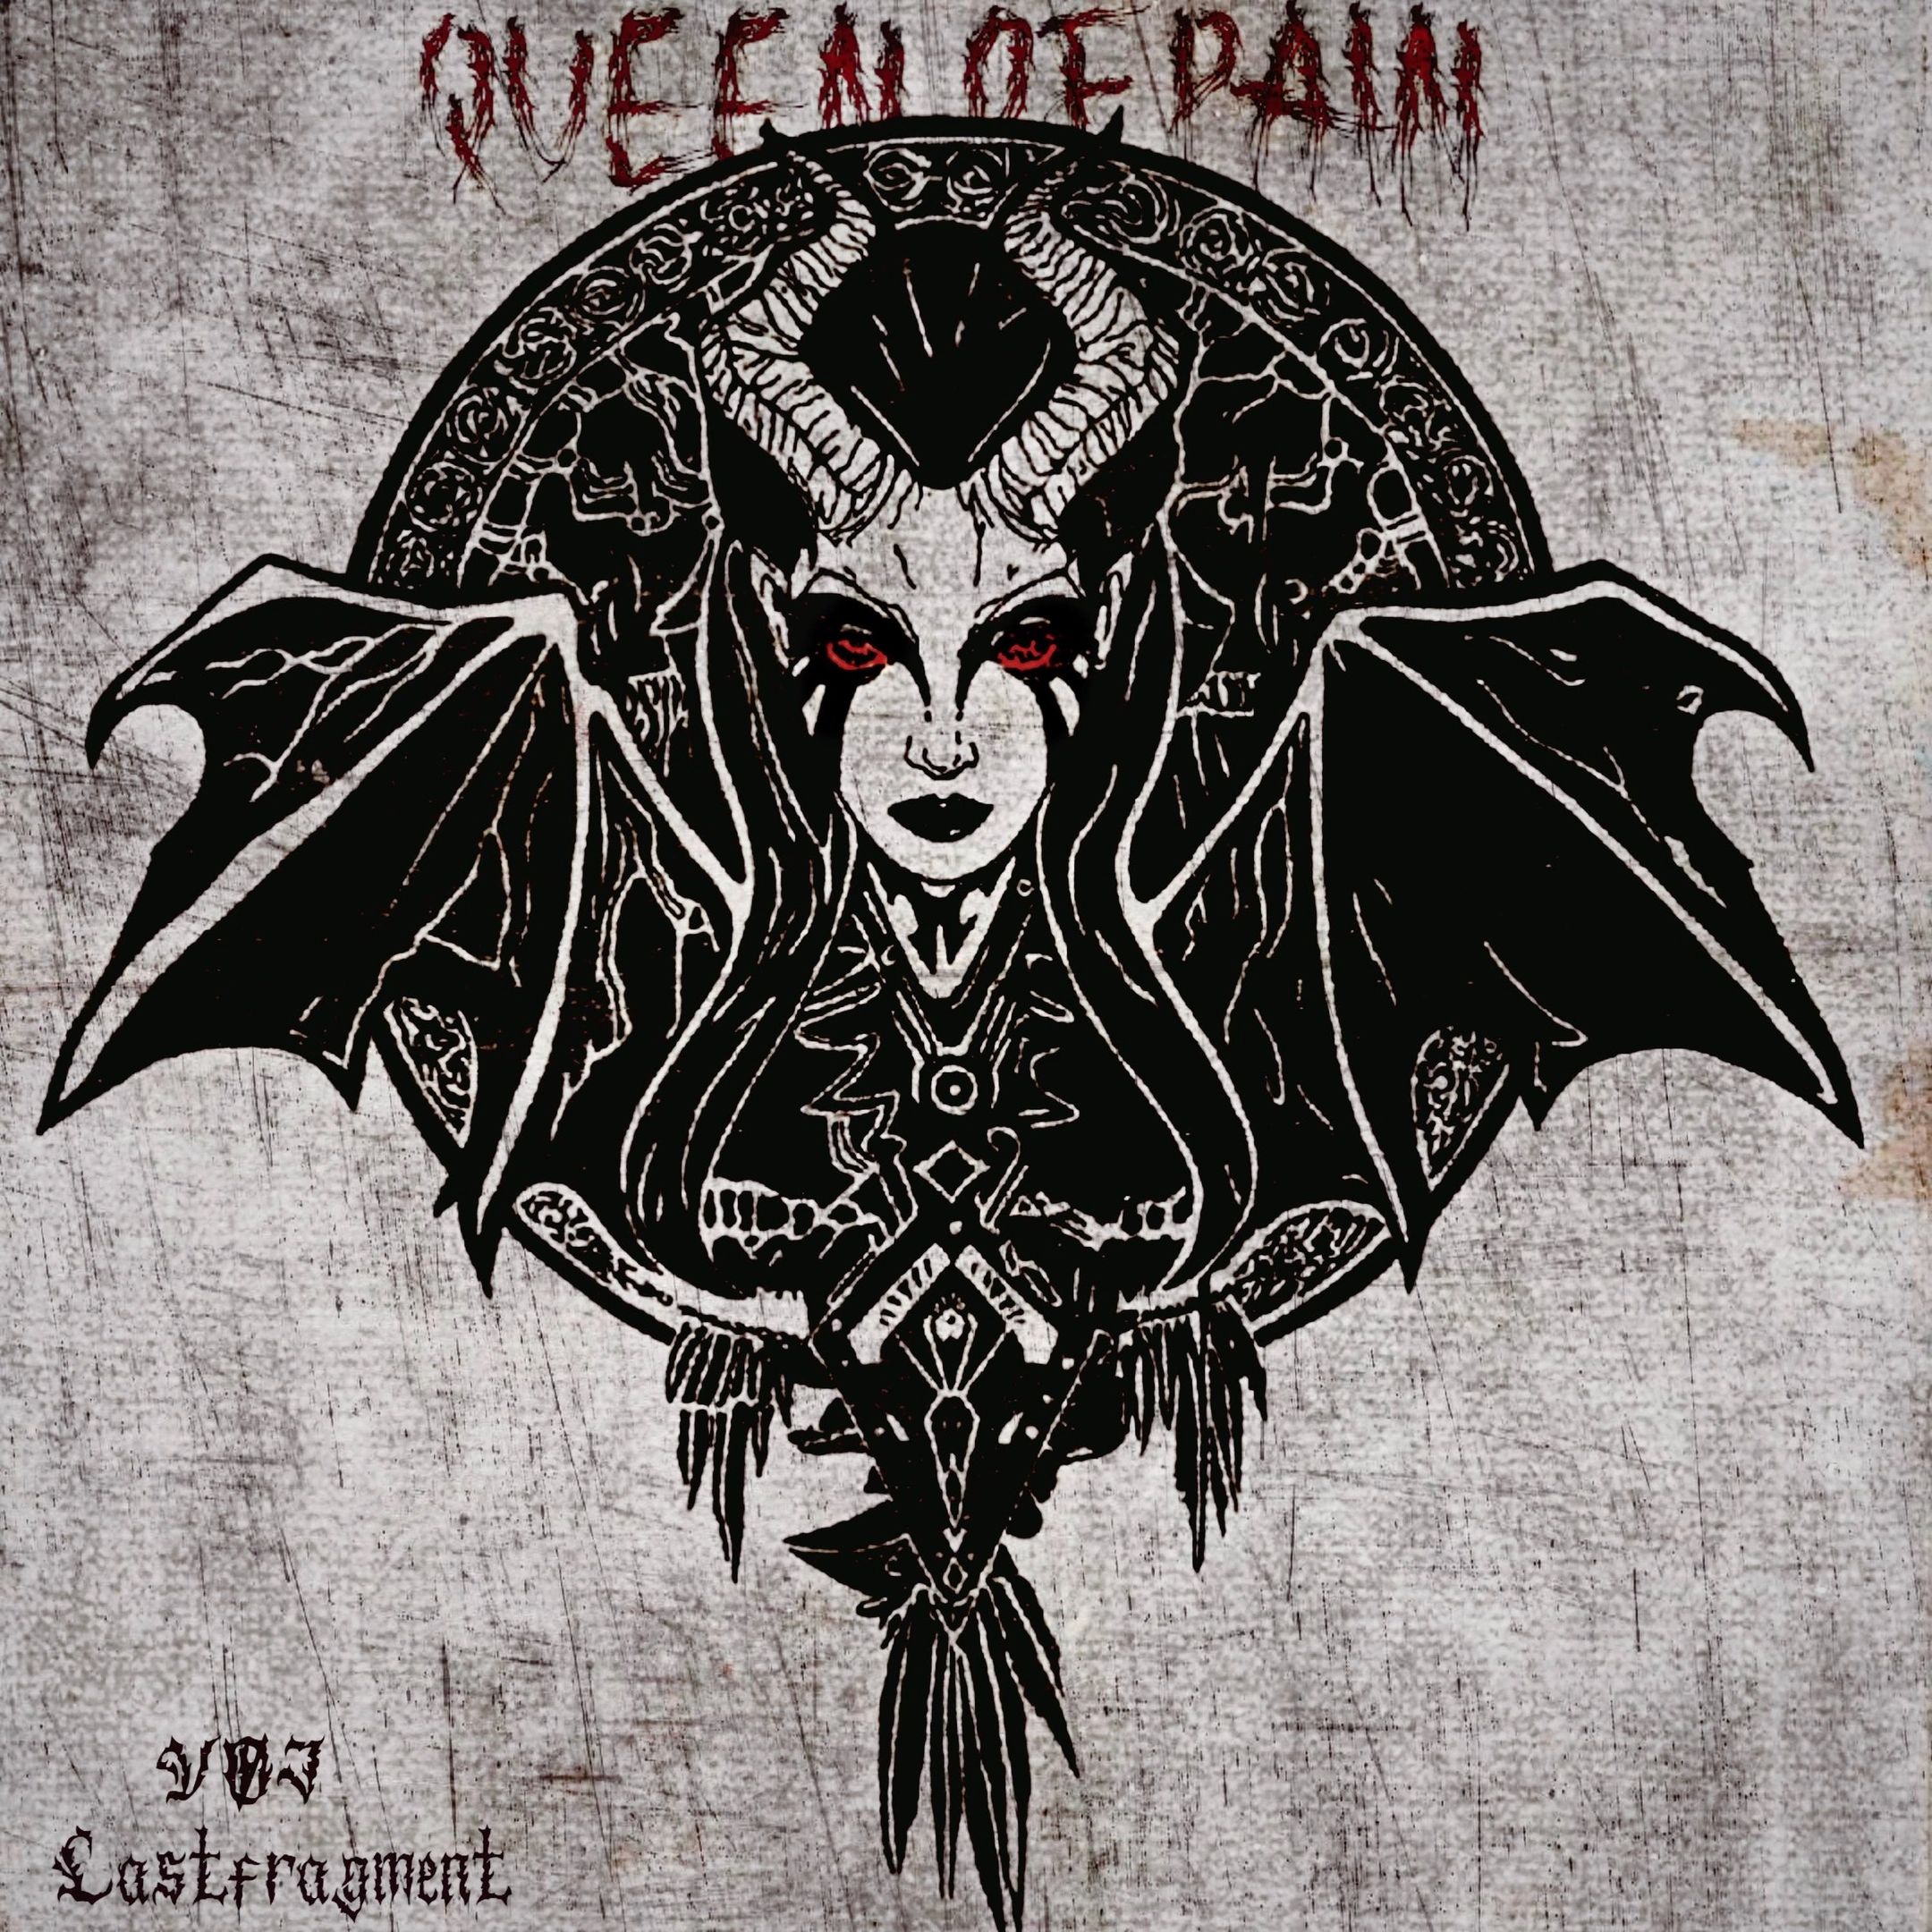 Download VØJ & Lastfragment - Queen of Pain